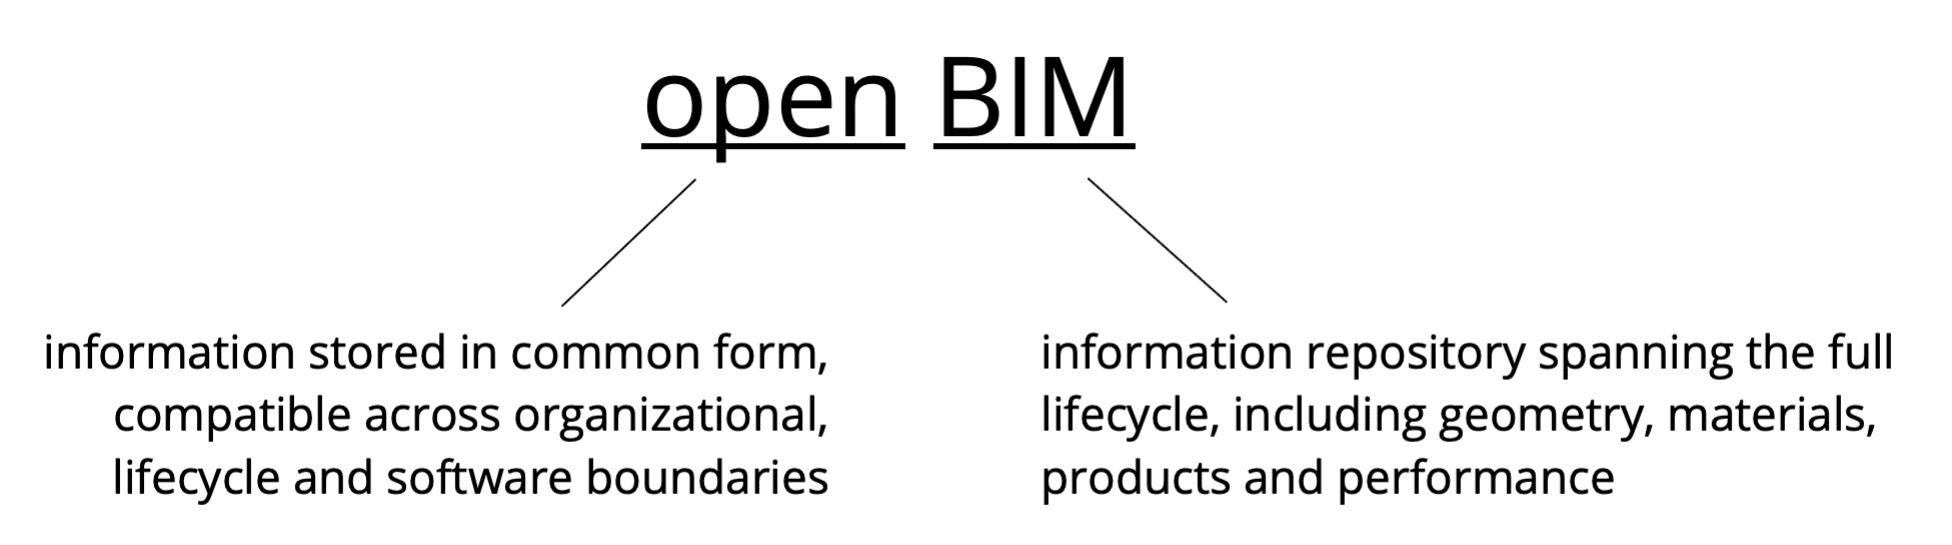 open BIM